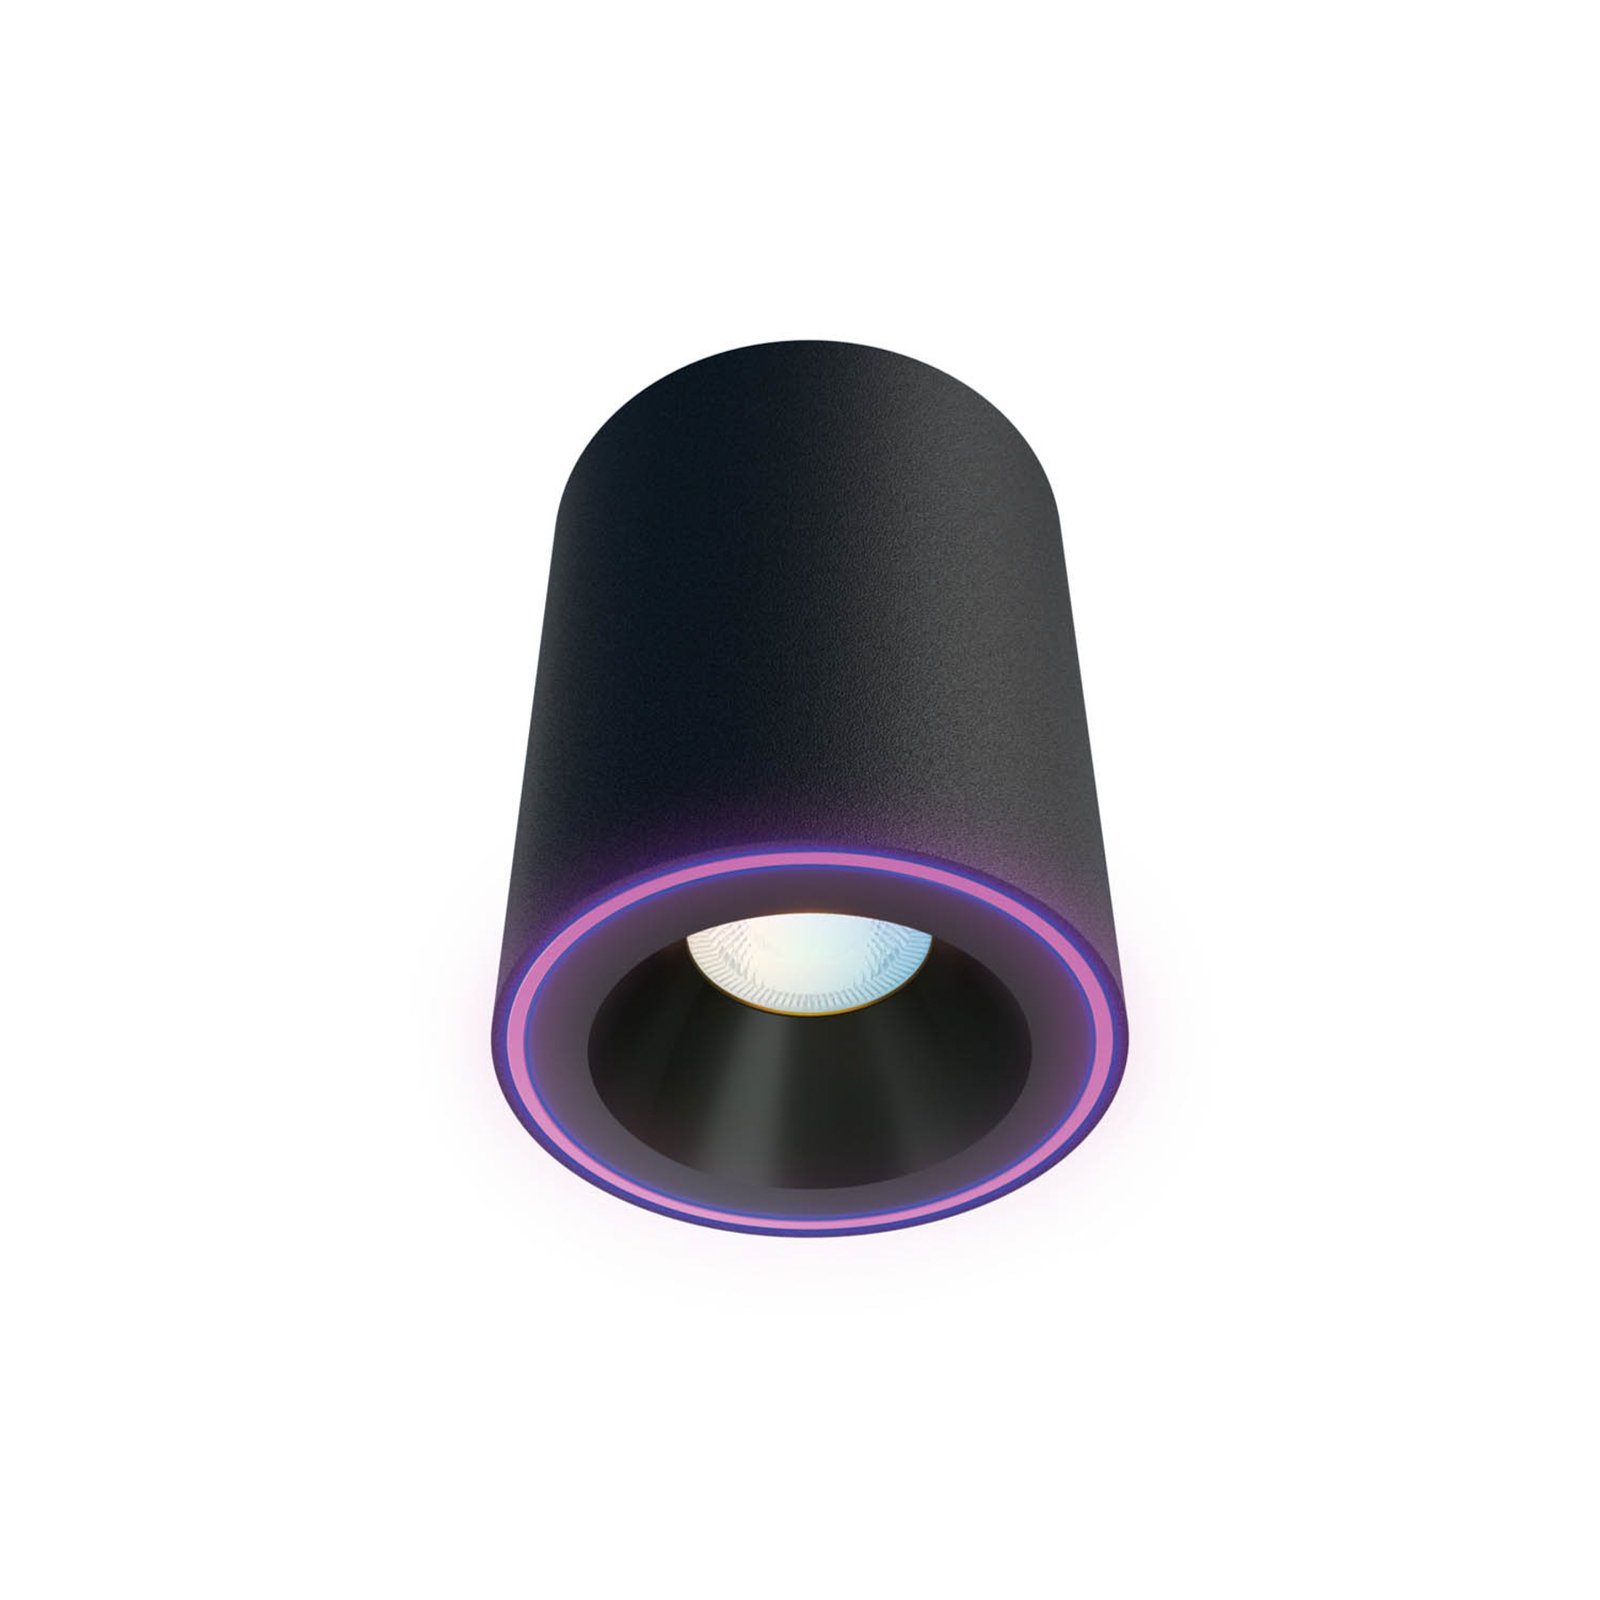 Calex Smart Halo Spot LED stropní bodovka, černá